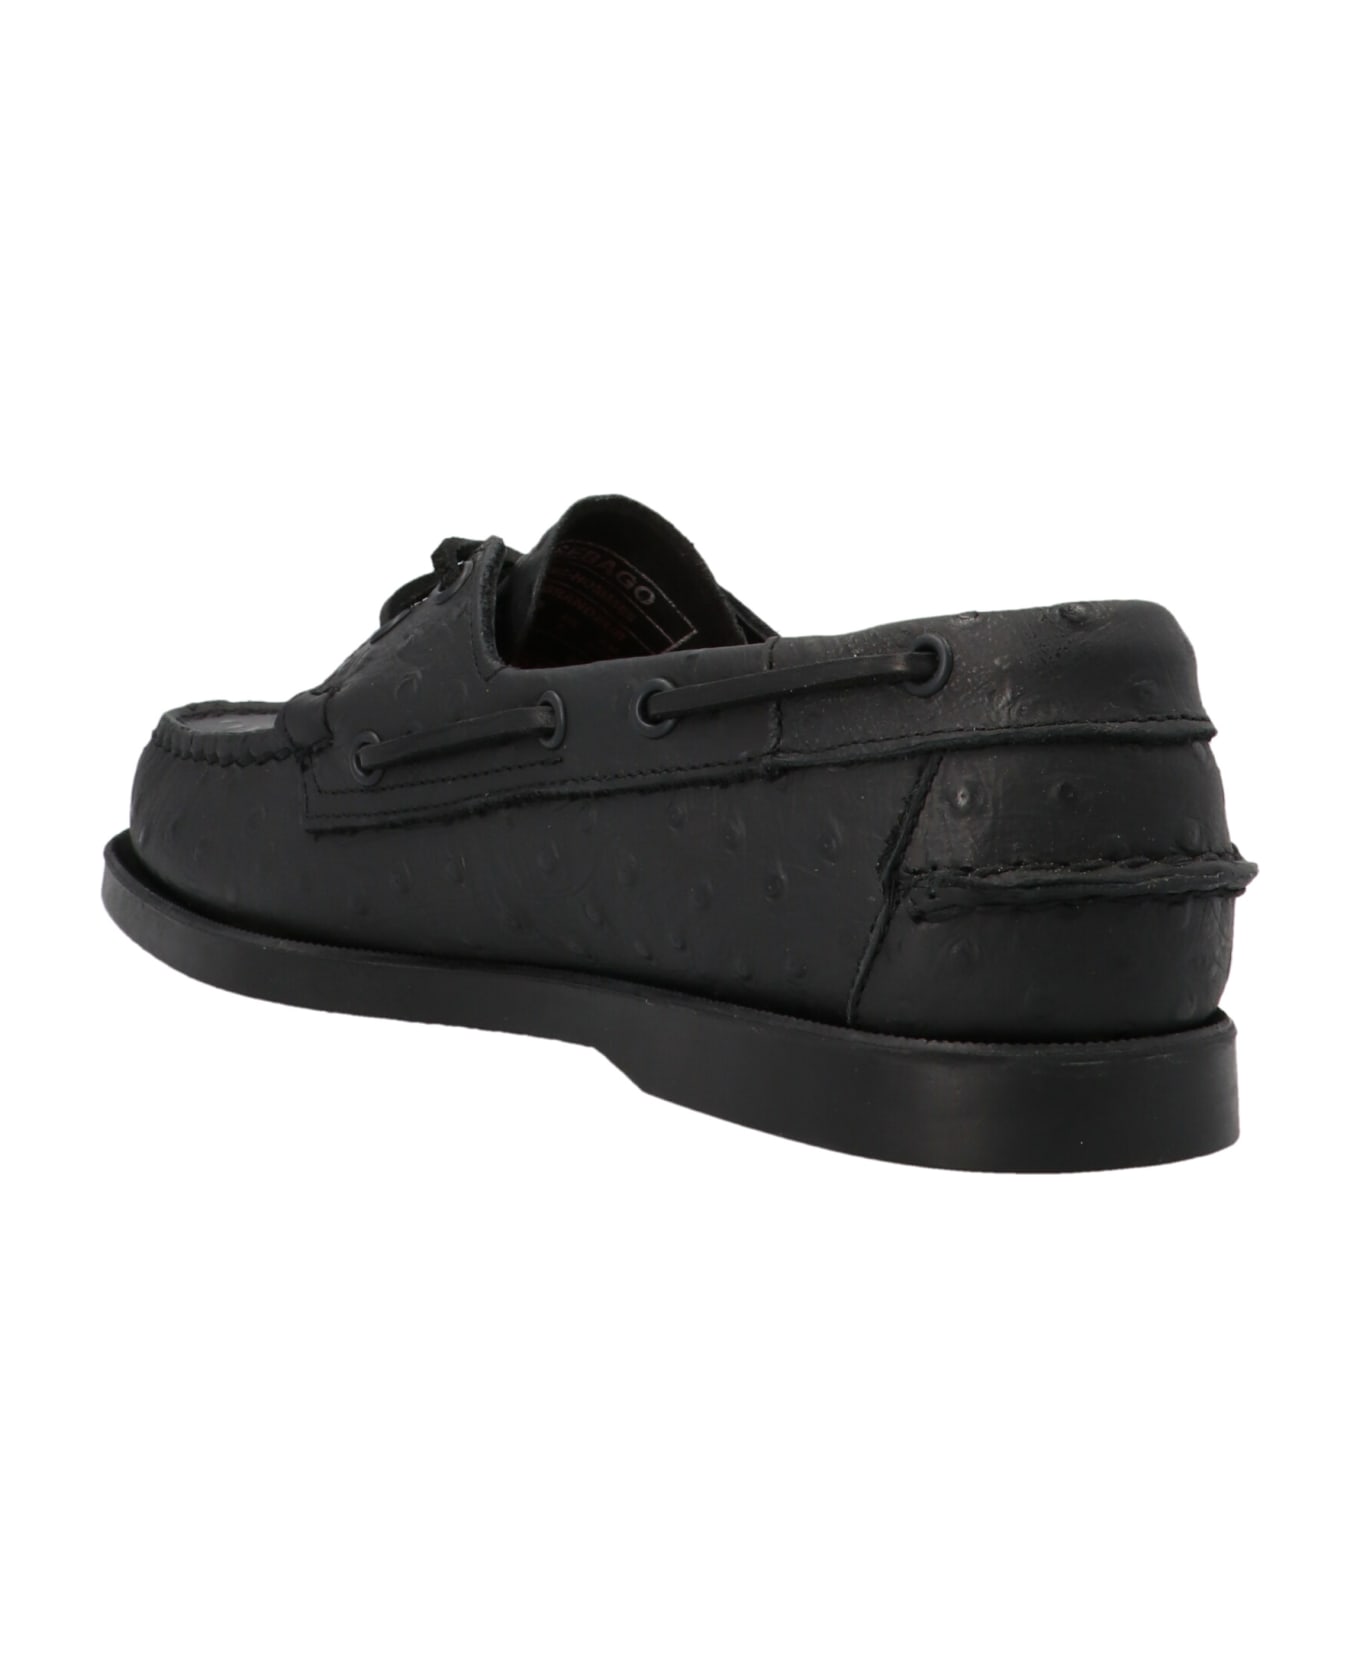 Sebago 'docksides' Loafers - Black  